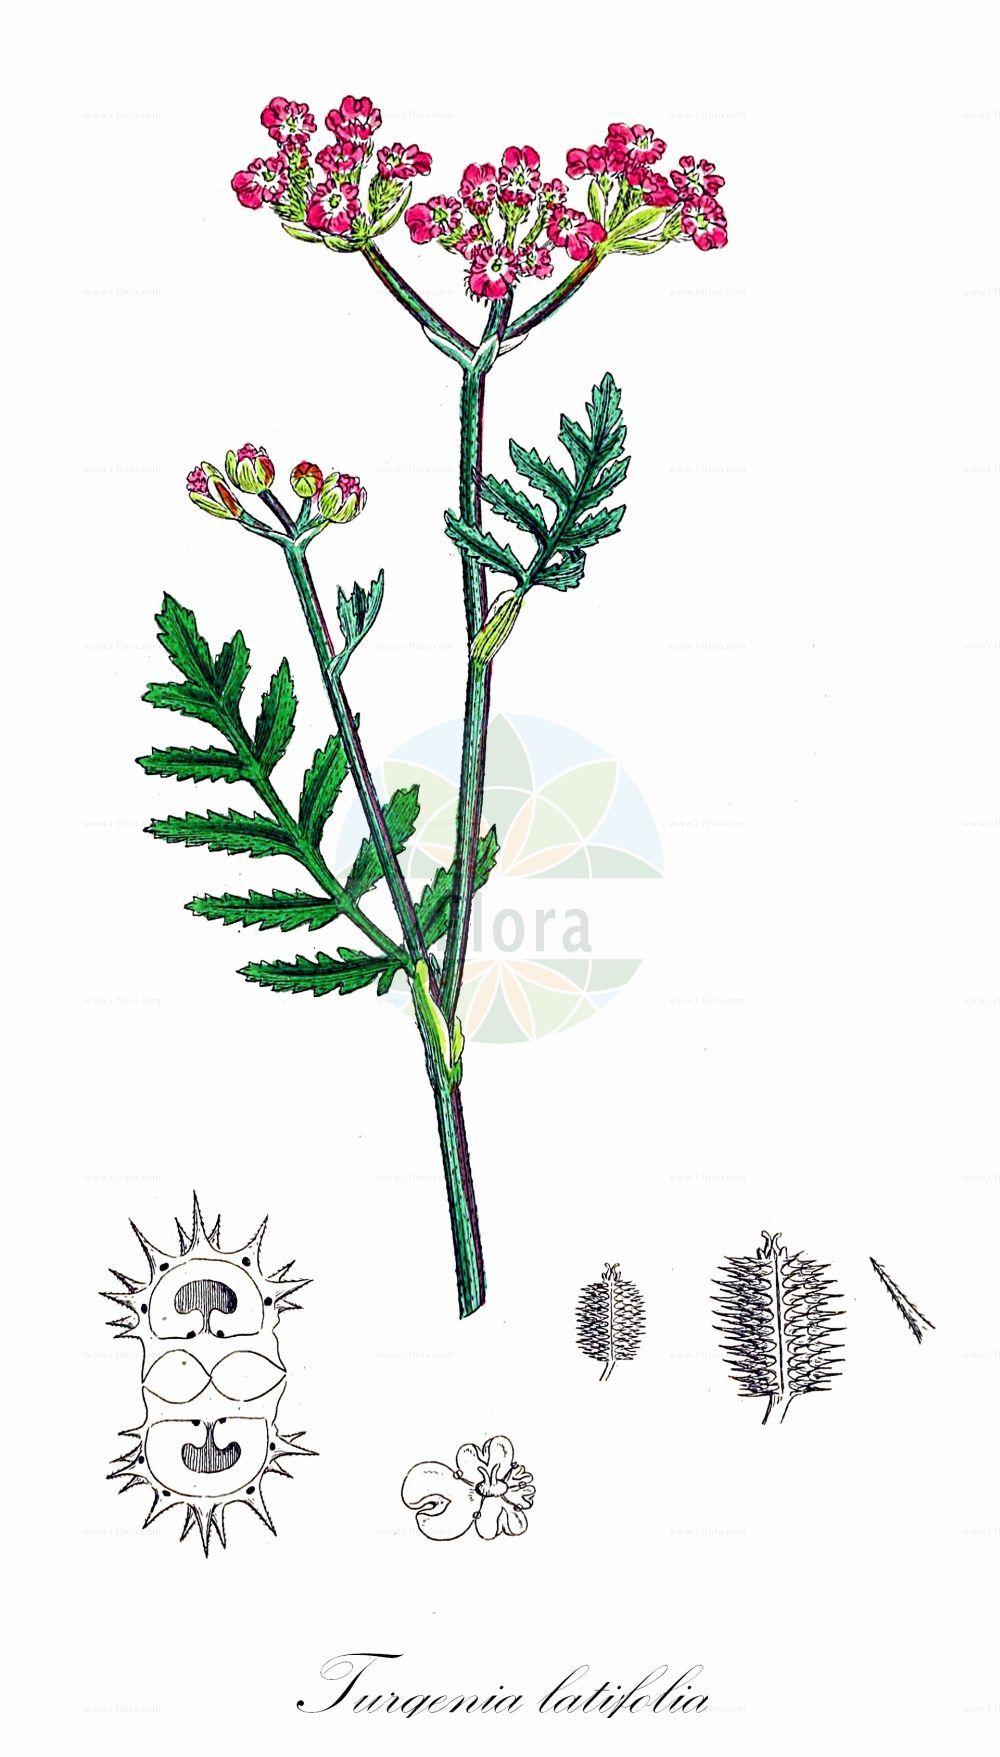 Historische Abbildung von Turgenia latifolia (Breitblättrige Turgenie - Greater Bur-parsley). Das Bild zeigt Blatt, Bluete, Frucht und Same. ---- Historical Drawing of Turgenia latifolia (Breitblättrige Turgenie - Greater Bur-parsley). The image is showing leaf, flower, fruit and seed.(Turgenia latifolia,Breitblättrige Turgenie,Greater Bur-parsley,Caucalis latifolia,Tordylium latifolium,Turgenia latifolia,Breitblaettrige Turgenie,Breitblaettrige Haftdolde,Klettendolde,Greater Bur-parsley,Broad Caucalis,Broadleaf False Carrot,Turgenia,Turgenie,False Carrot,Apiaceae,Doldengewächse,Carrot family,Blatt,Bluete,Frucht,Same,leaf,flower,fruit,seed,Sowerby (1790-1813))